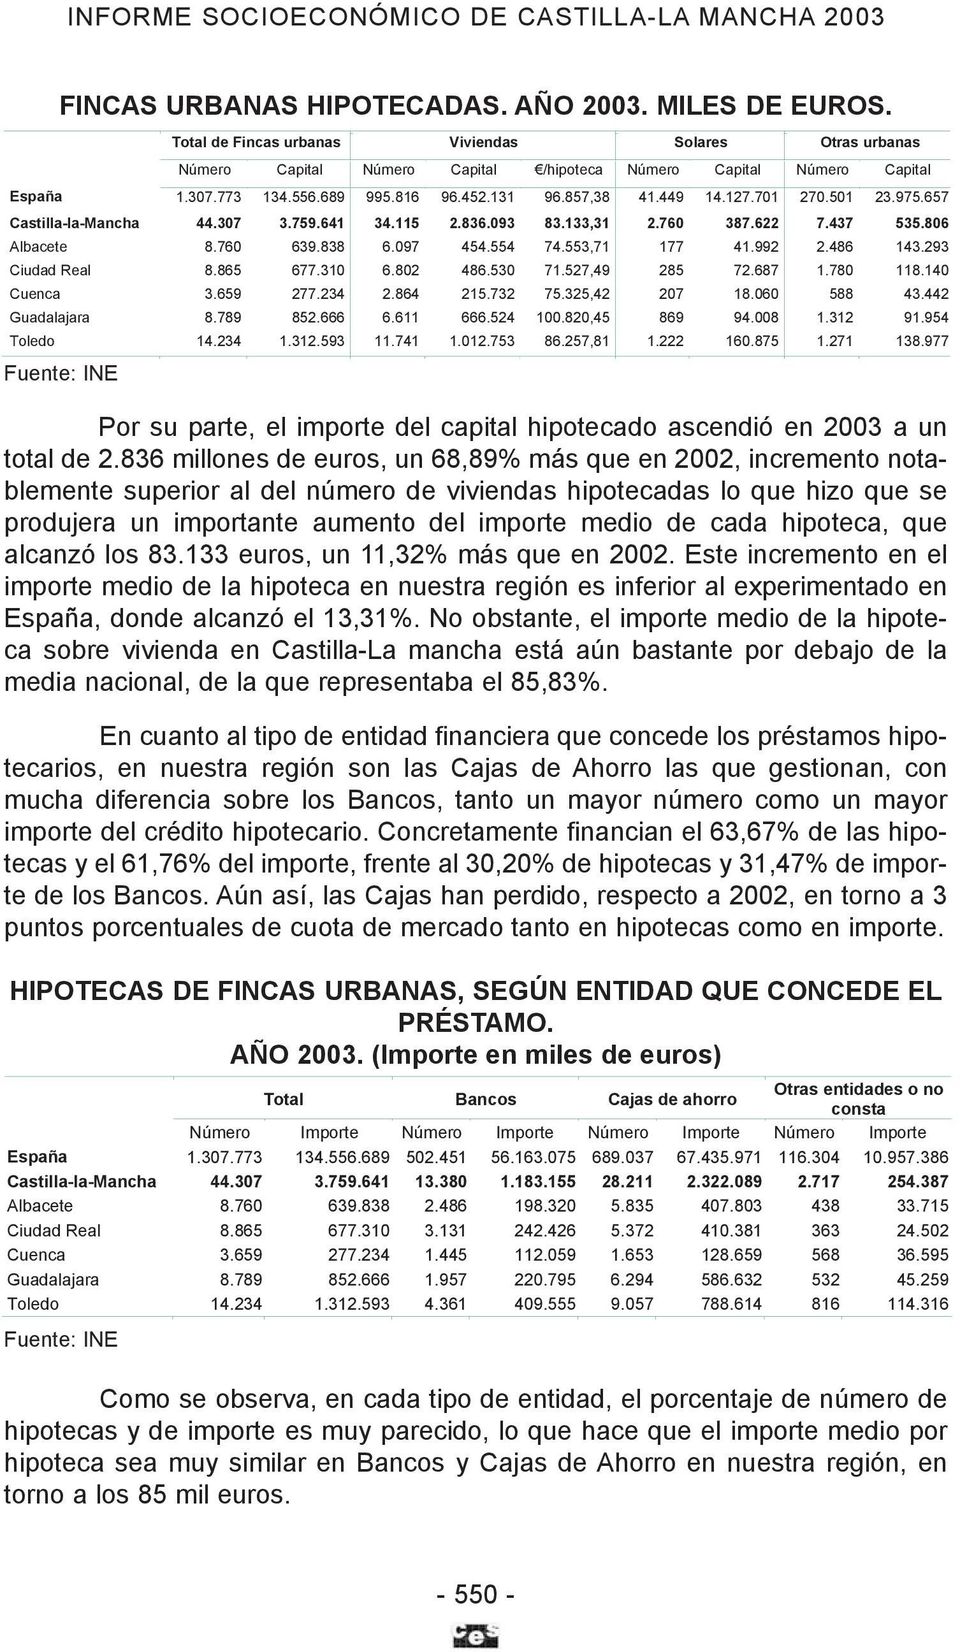 hipoteca, que alcanzó los 83.133 euros, un 11,32% más que en 2002. Este incremento en el importe medio de la hipoteca en nuestra región es inferior al experimentado en España, donde alcanzó el 13,31%.